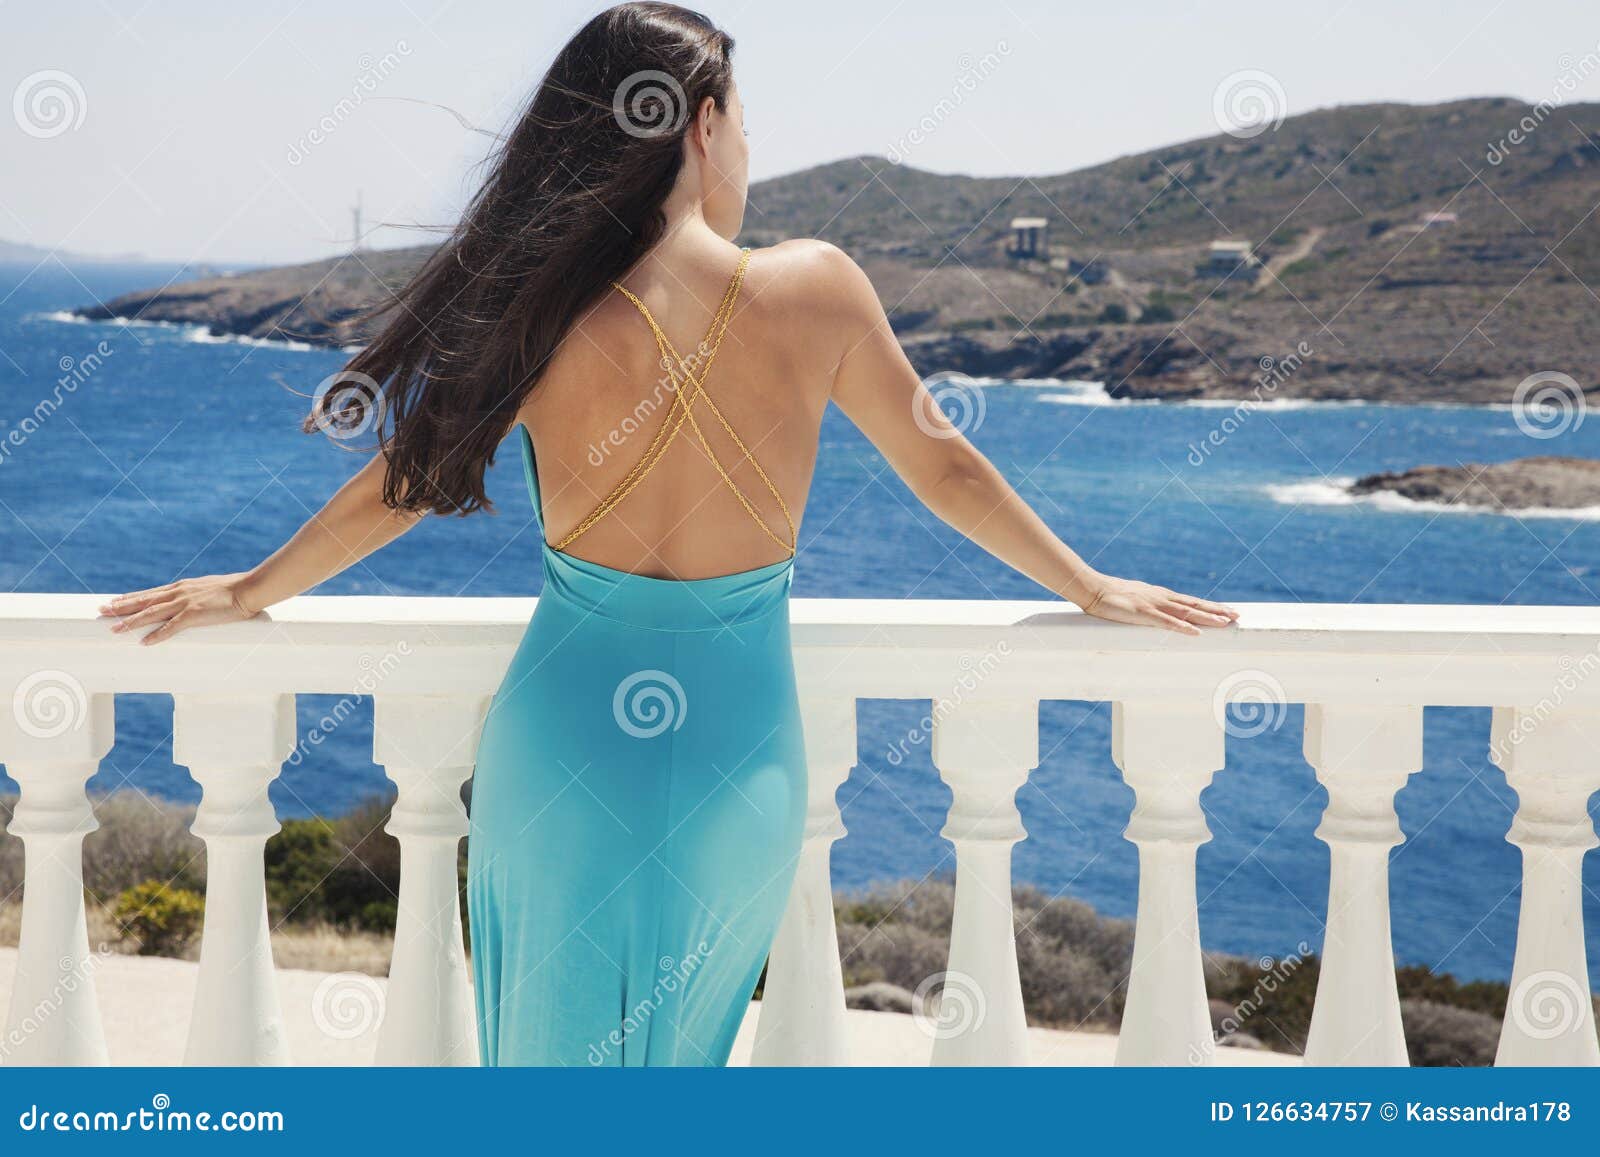 Vestido azul y mar azul imagen de archivo. Imagen de mirada - 126634757